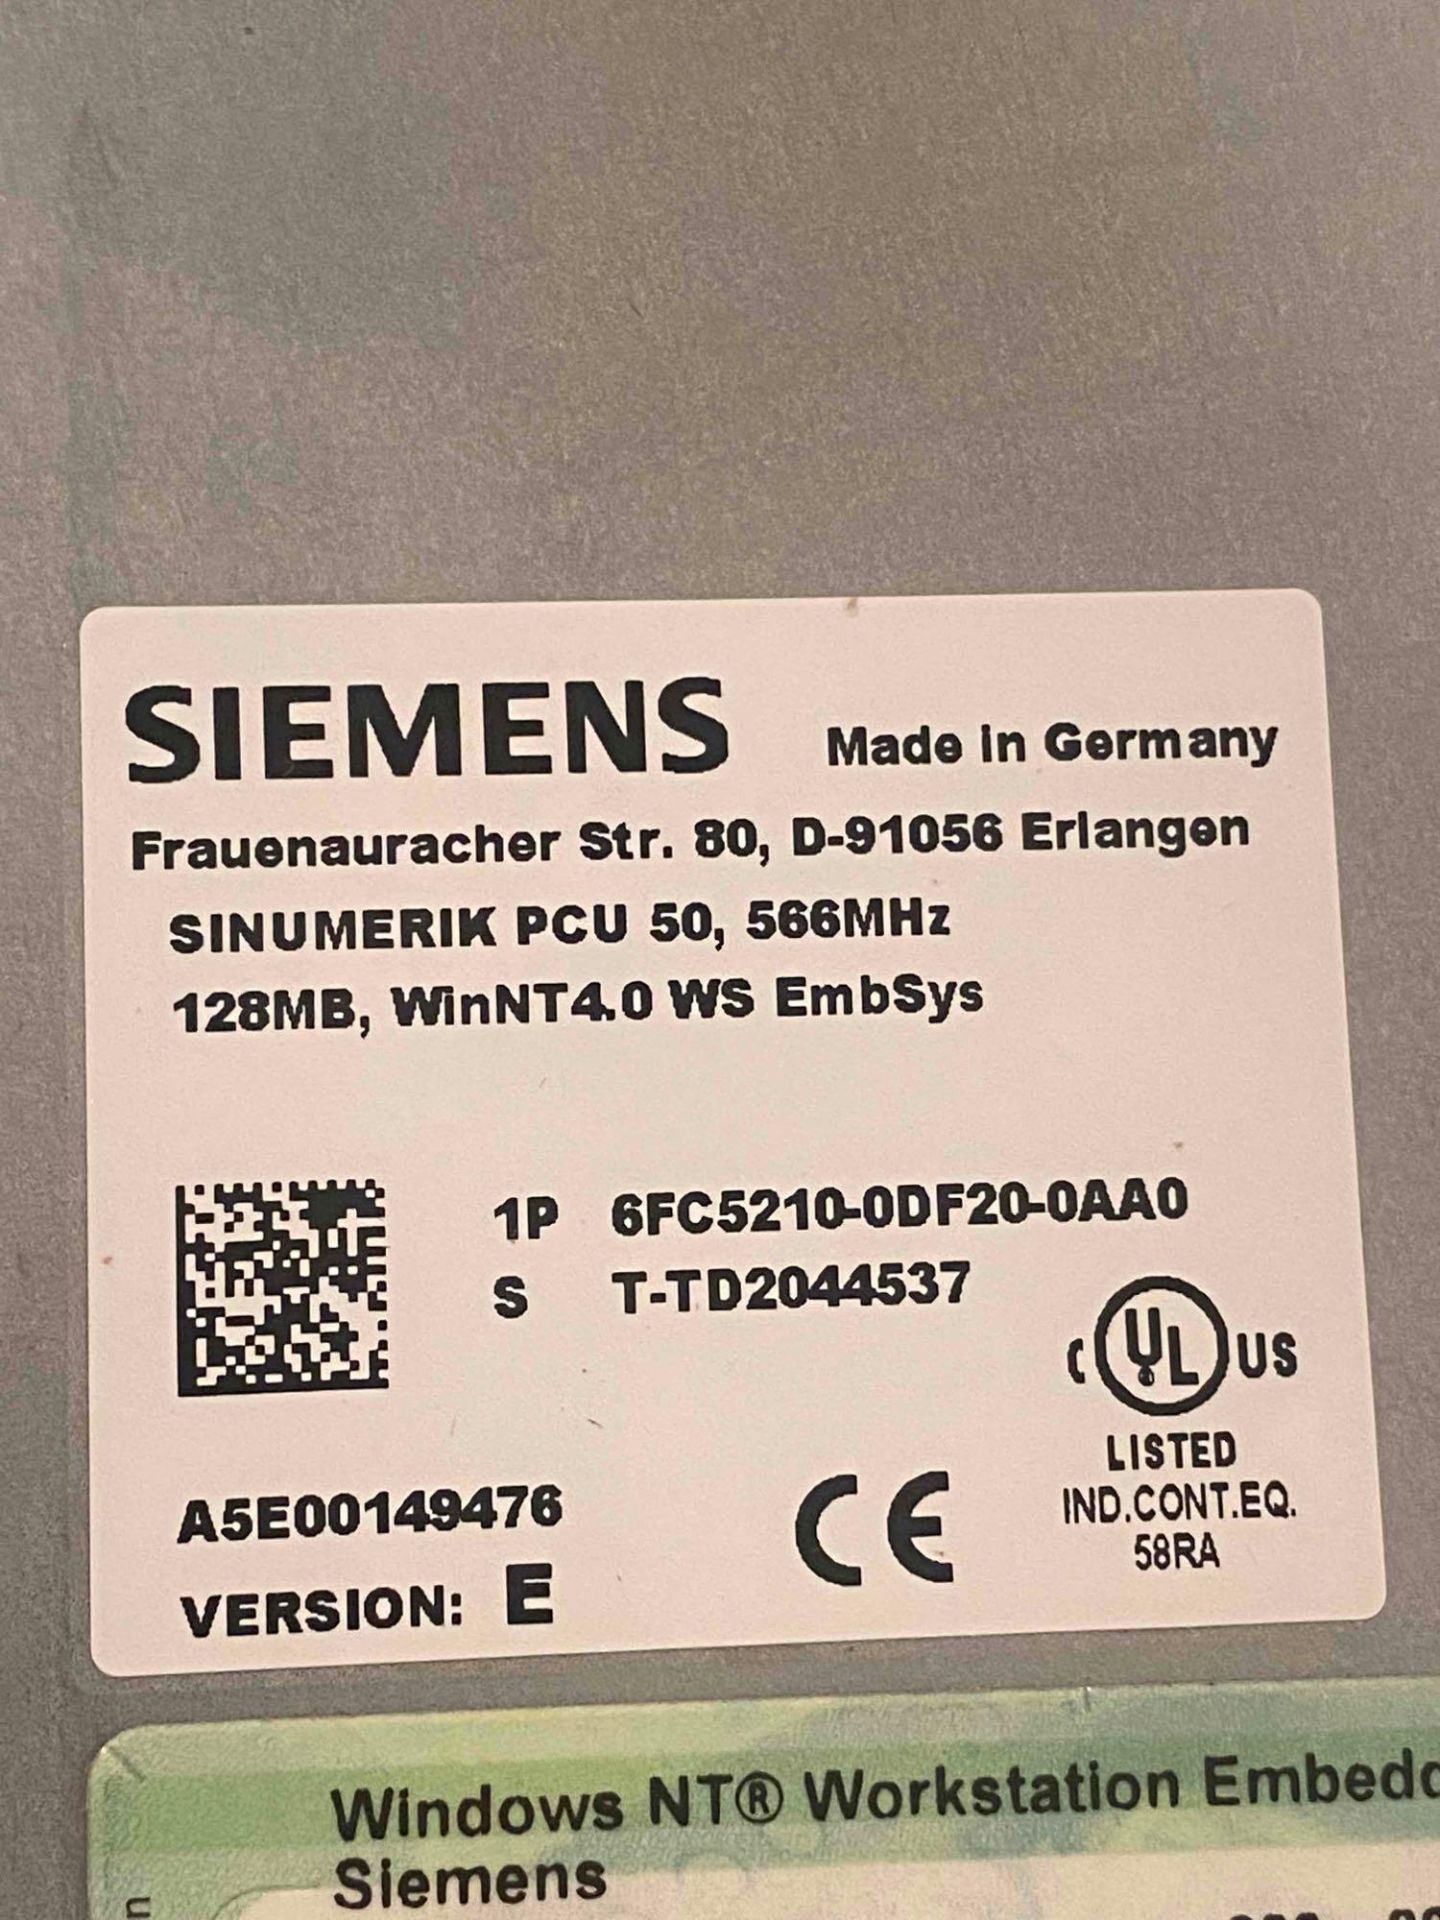 Siemens Sinumerik - Image 4 of 4